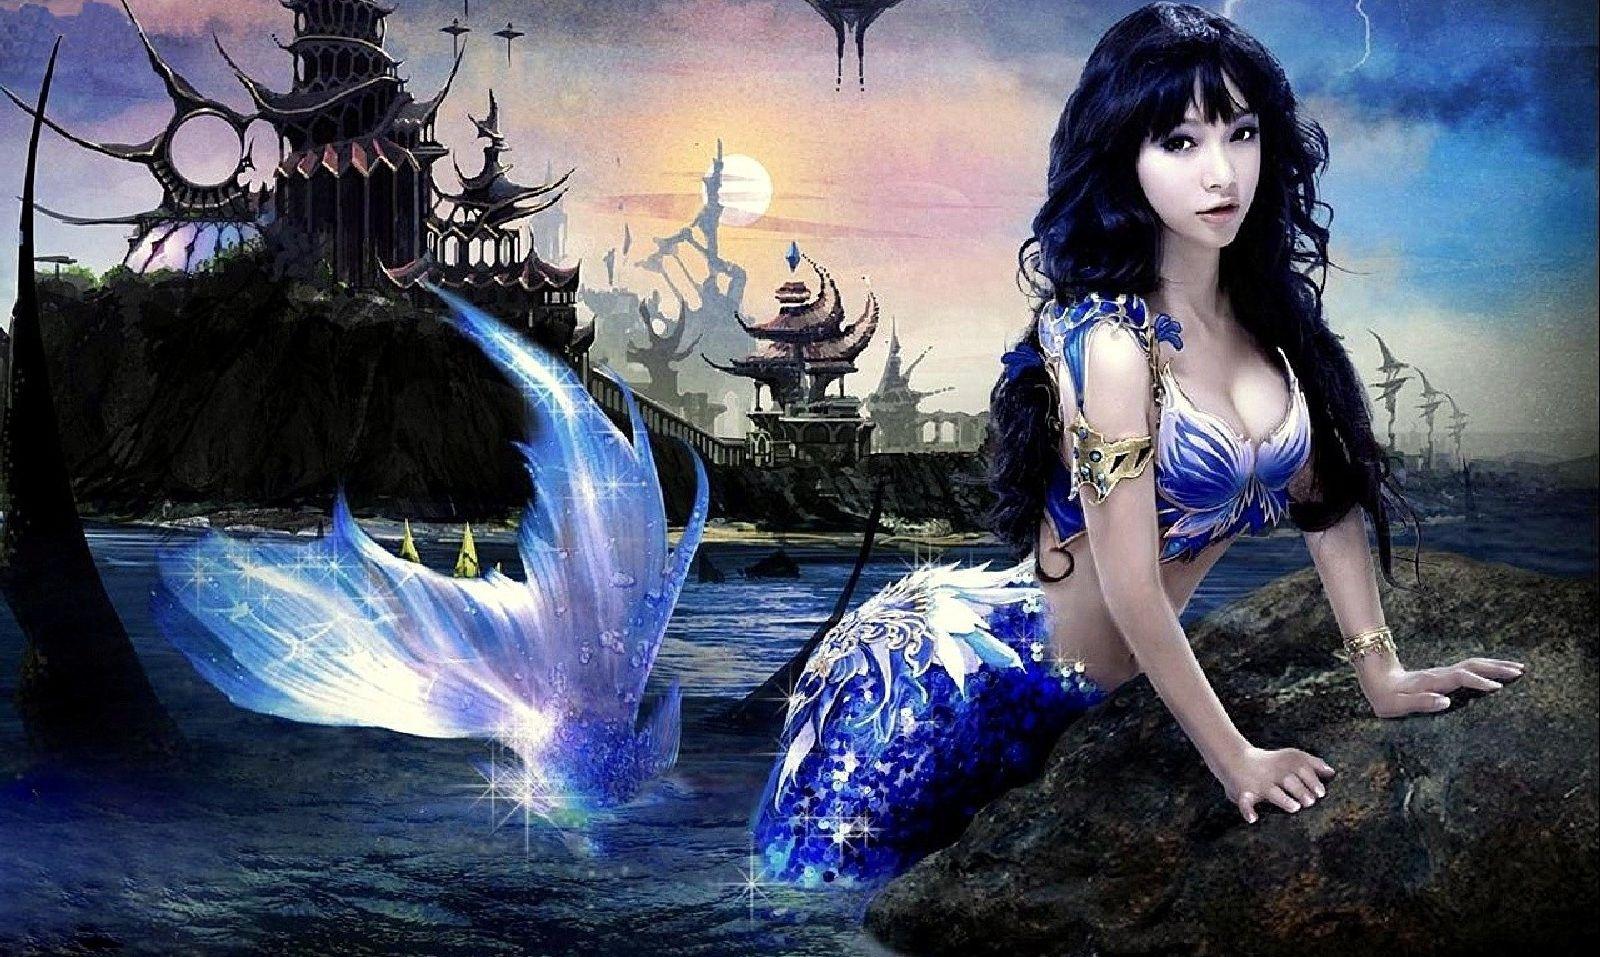 Beautiful Mermaid wallpaper.com. Mermaid